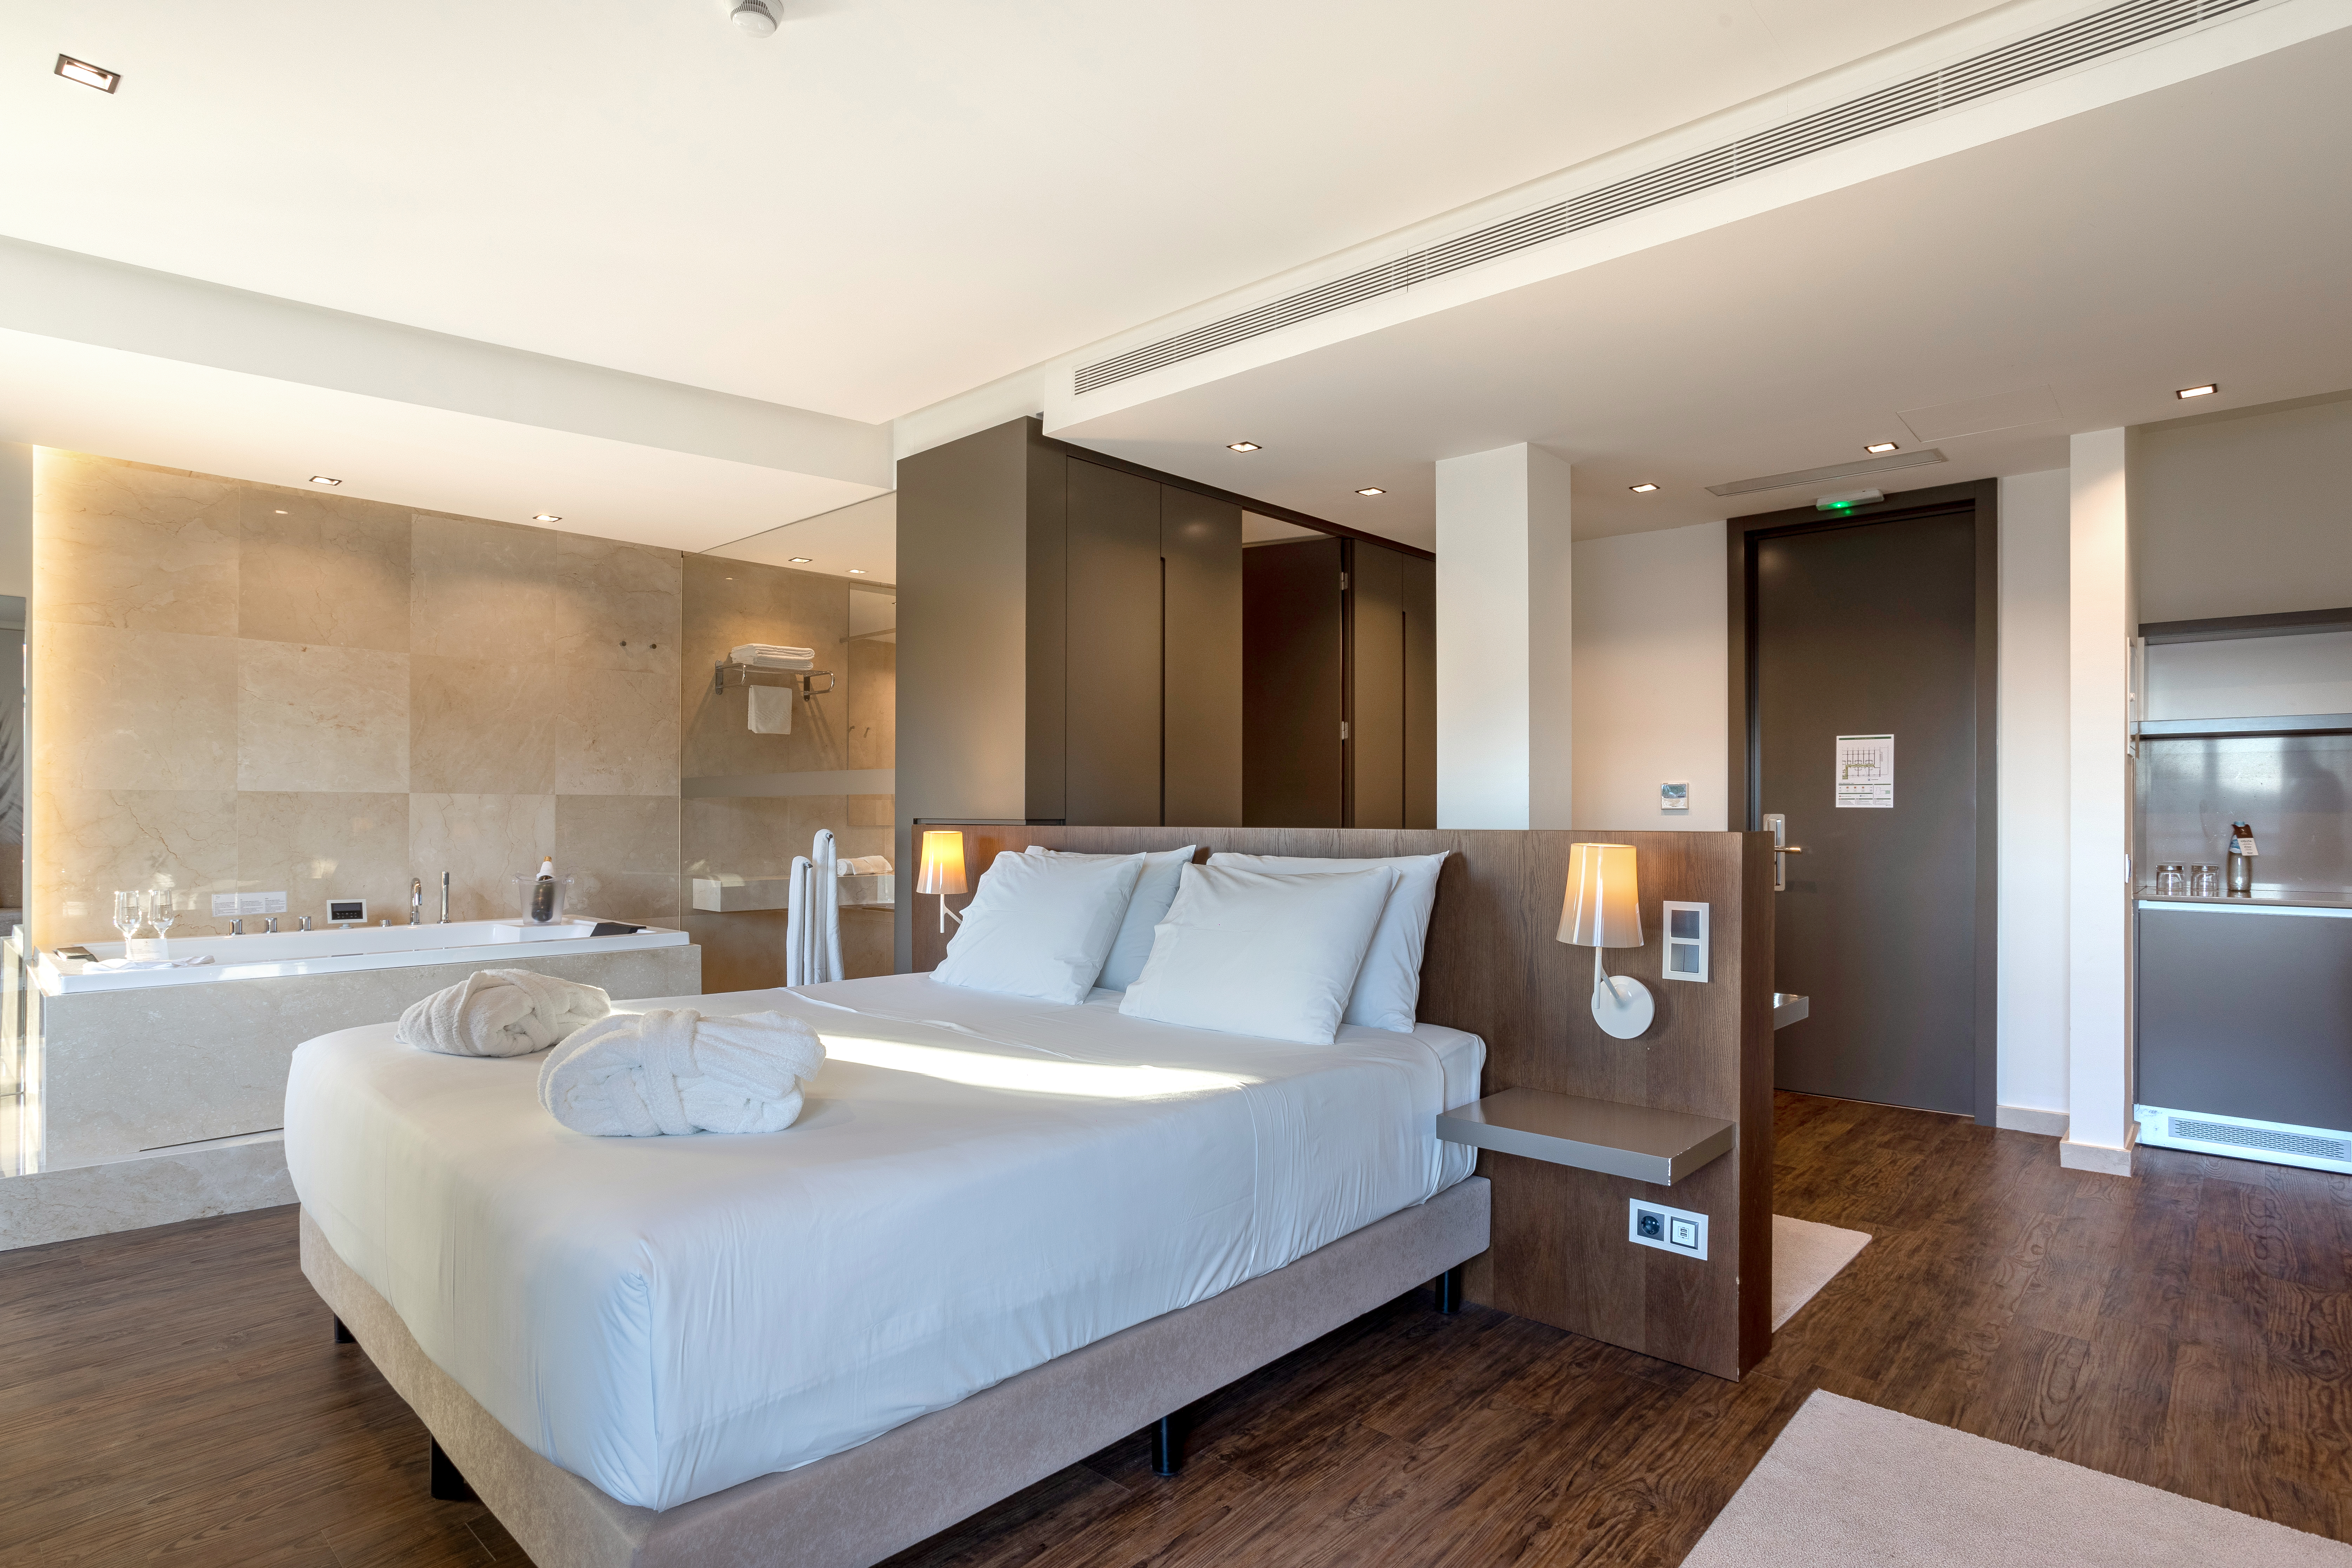 Espaçosas e luxuosas suites para a melhor estadia na nossa companhia!